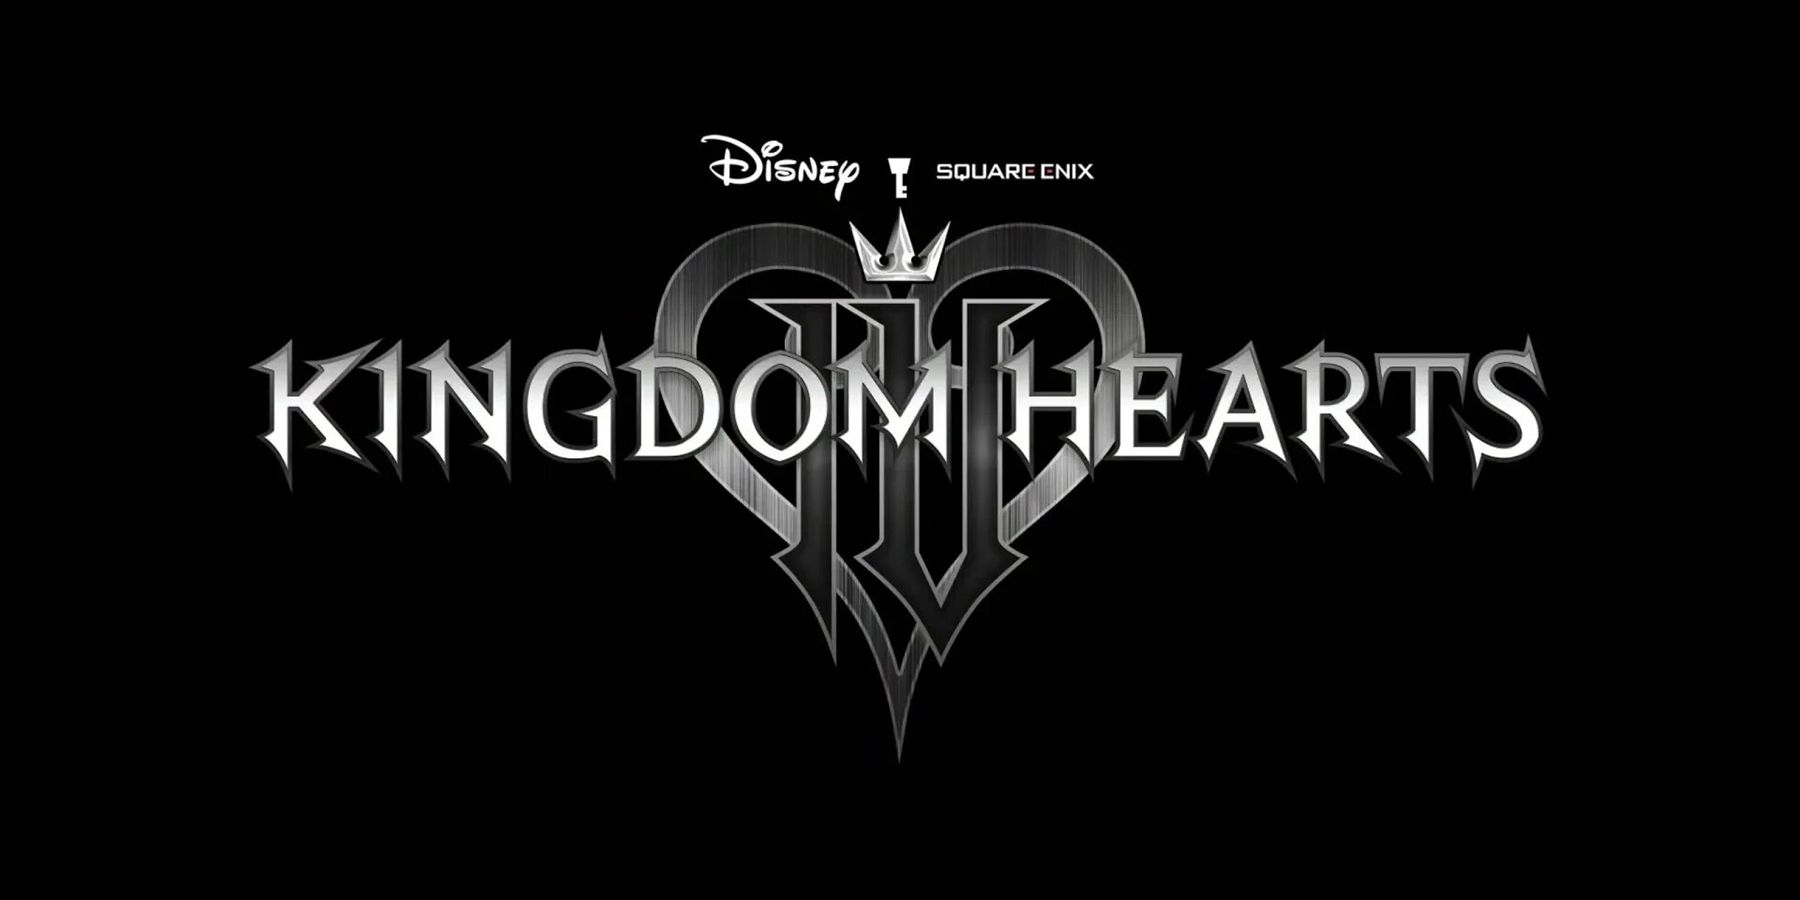 kingdom hearts 4 logo